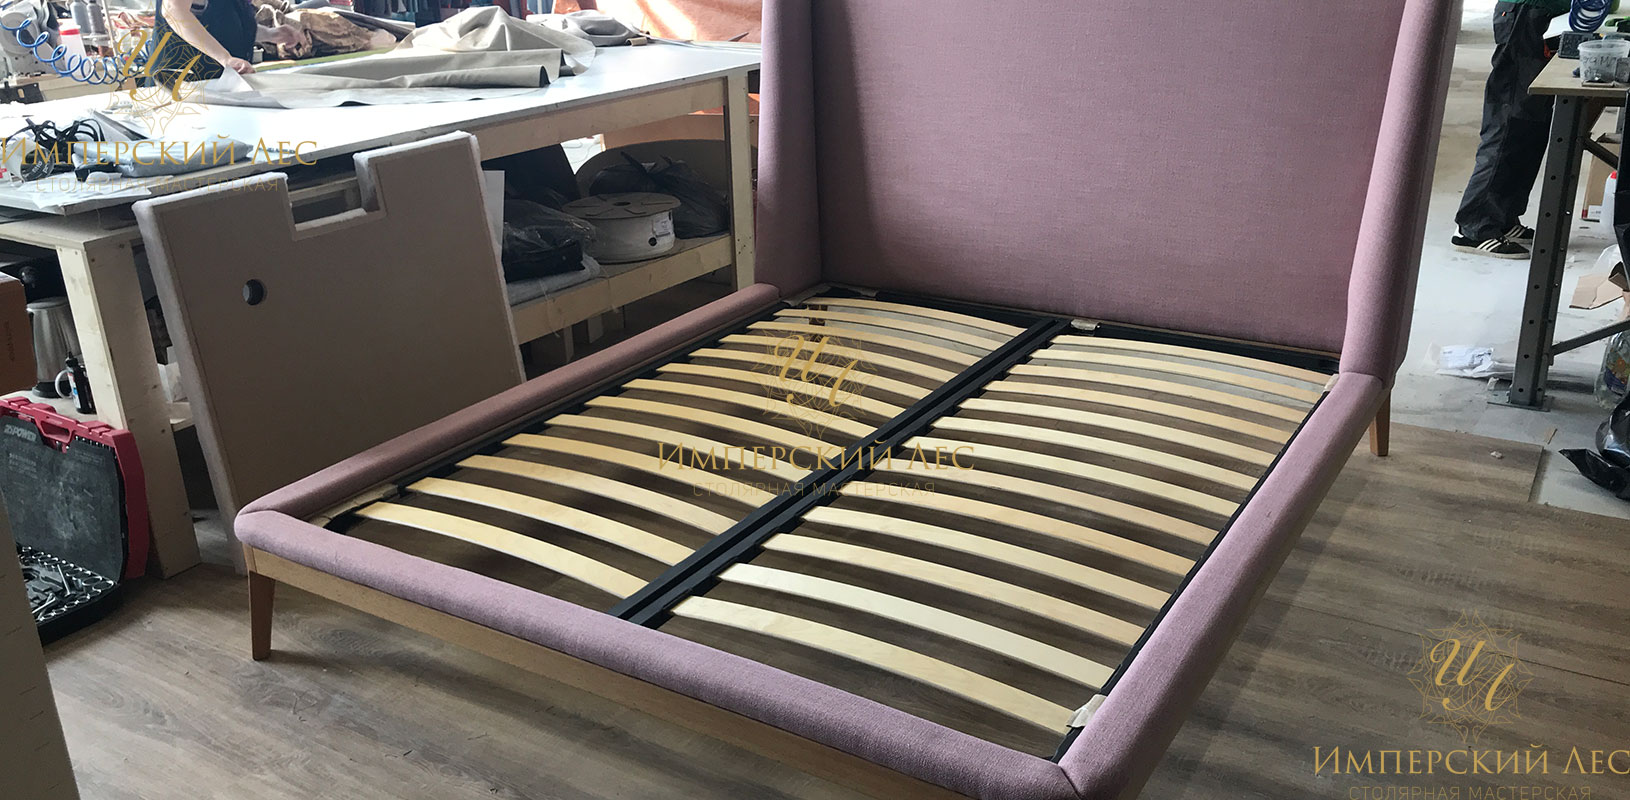 Кровать "Глория" из натурального дерева с обивкой фиолетового цвета